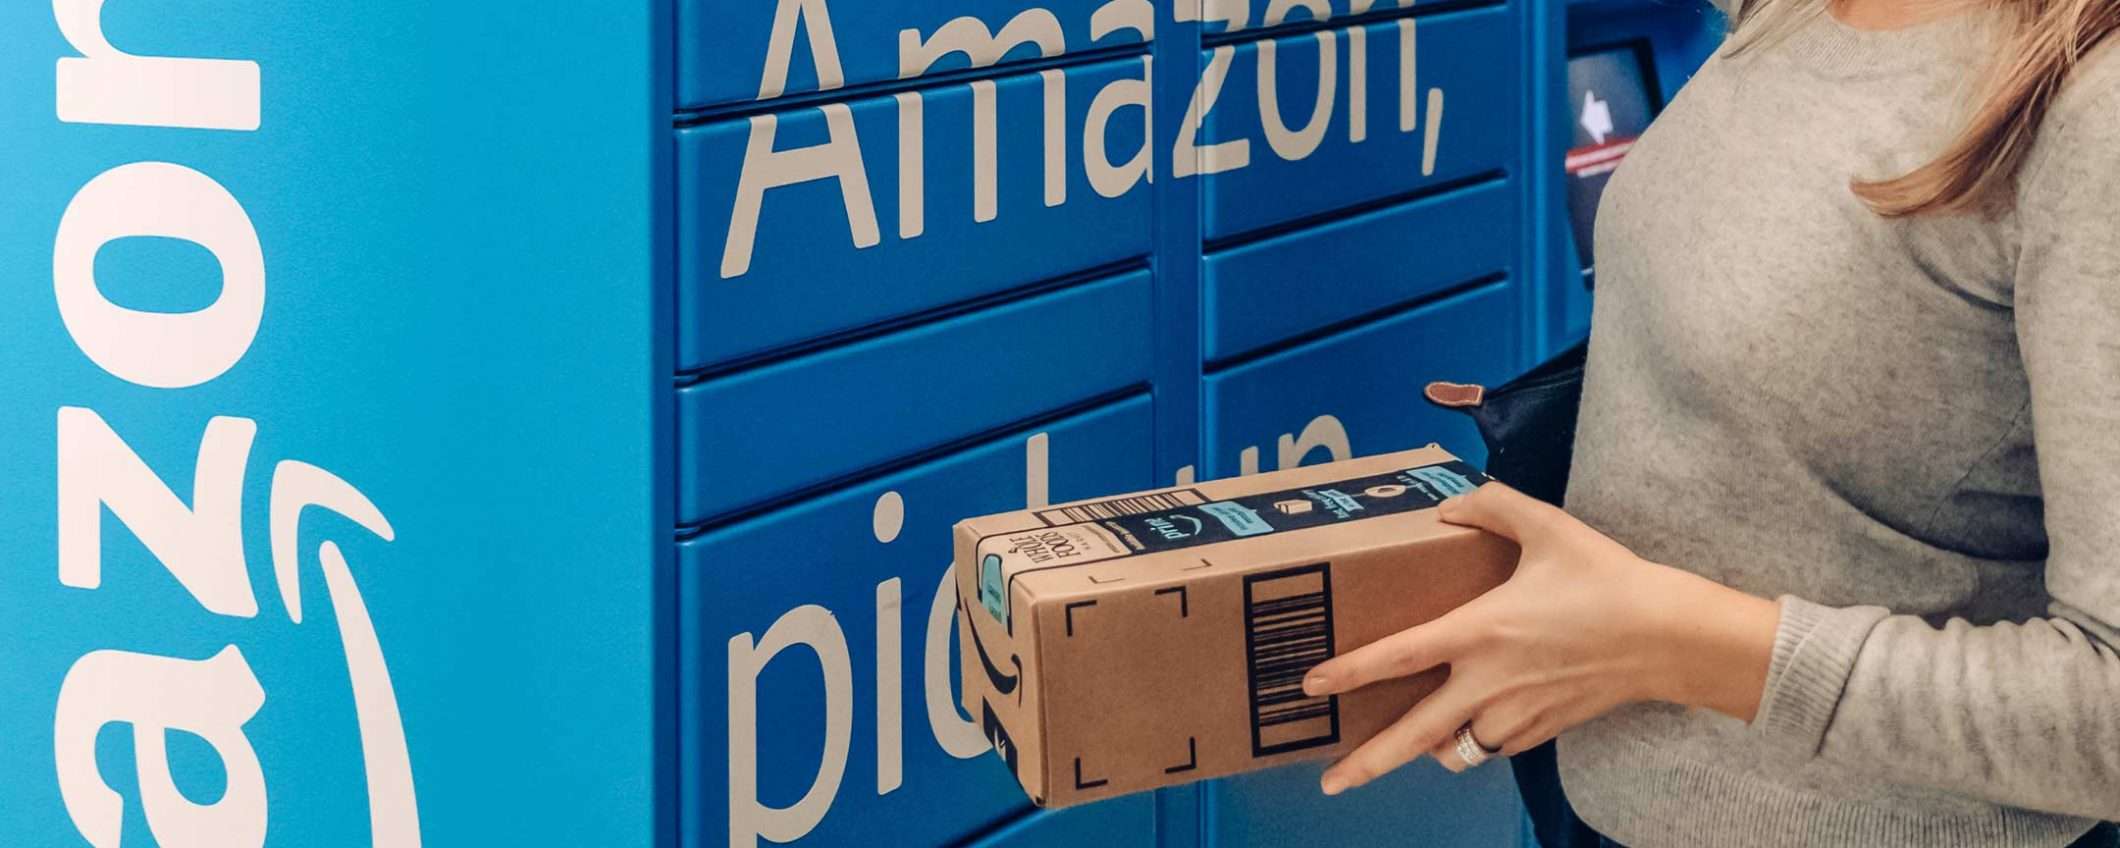 Amazon offre più dati ai venditori di terze parti